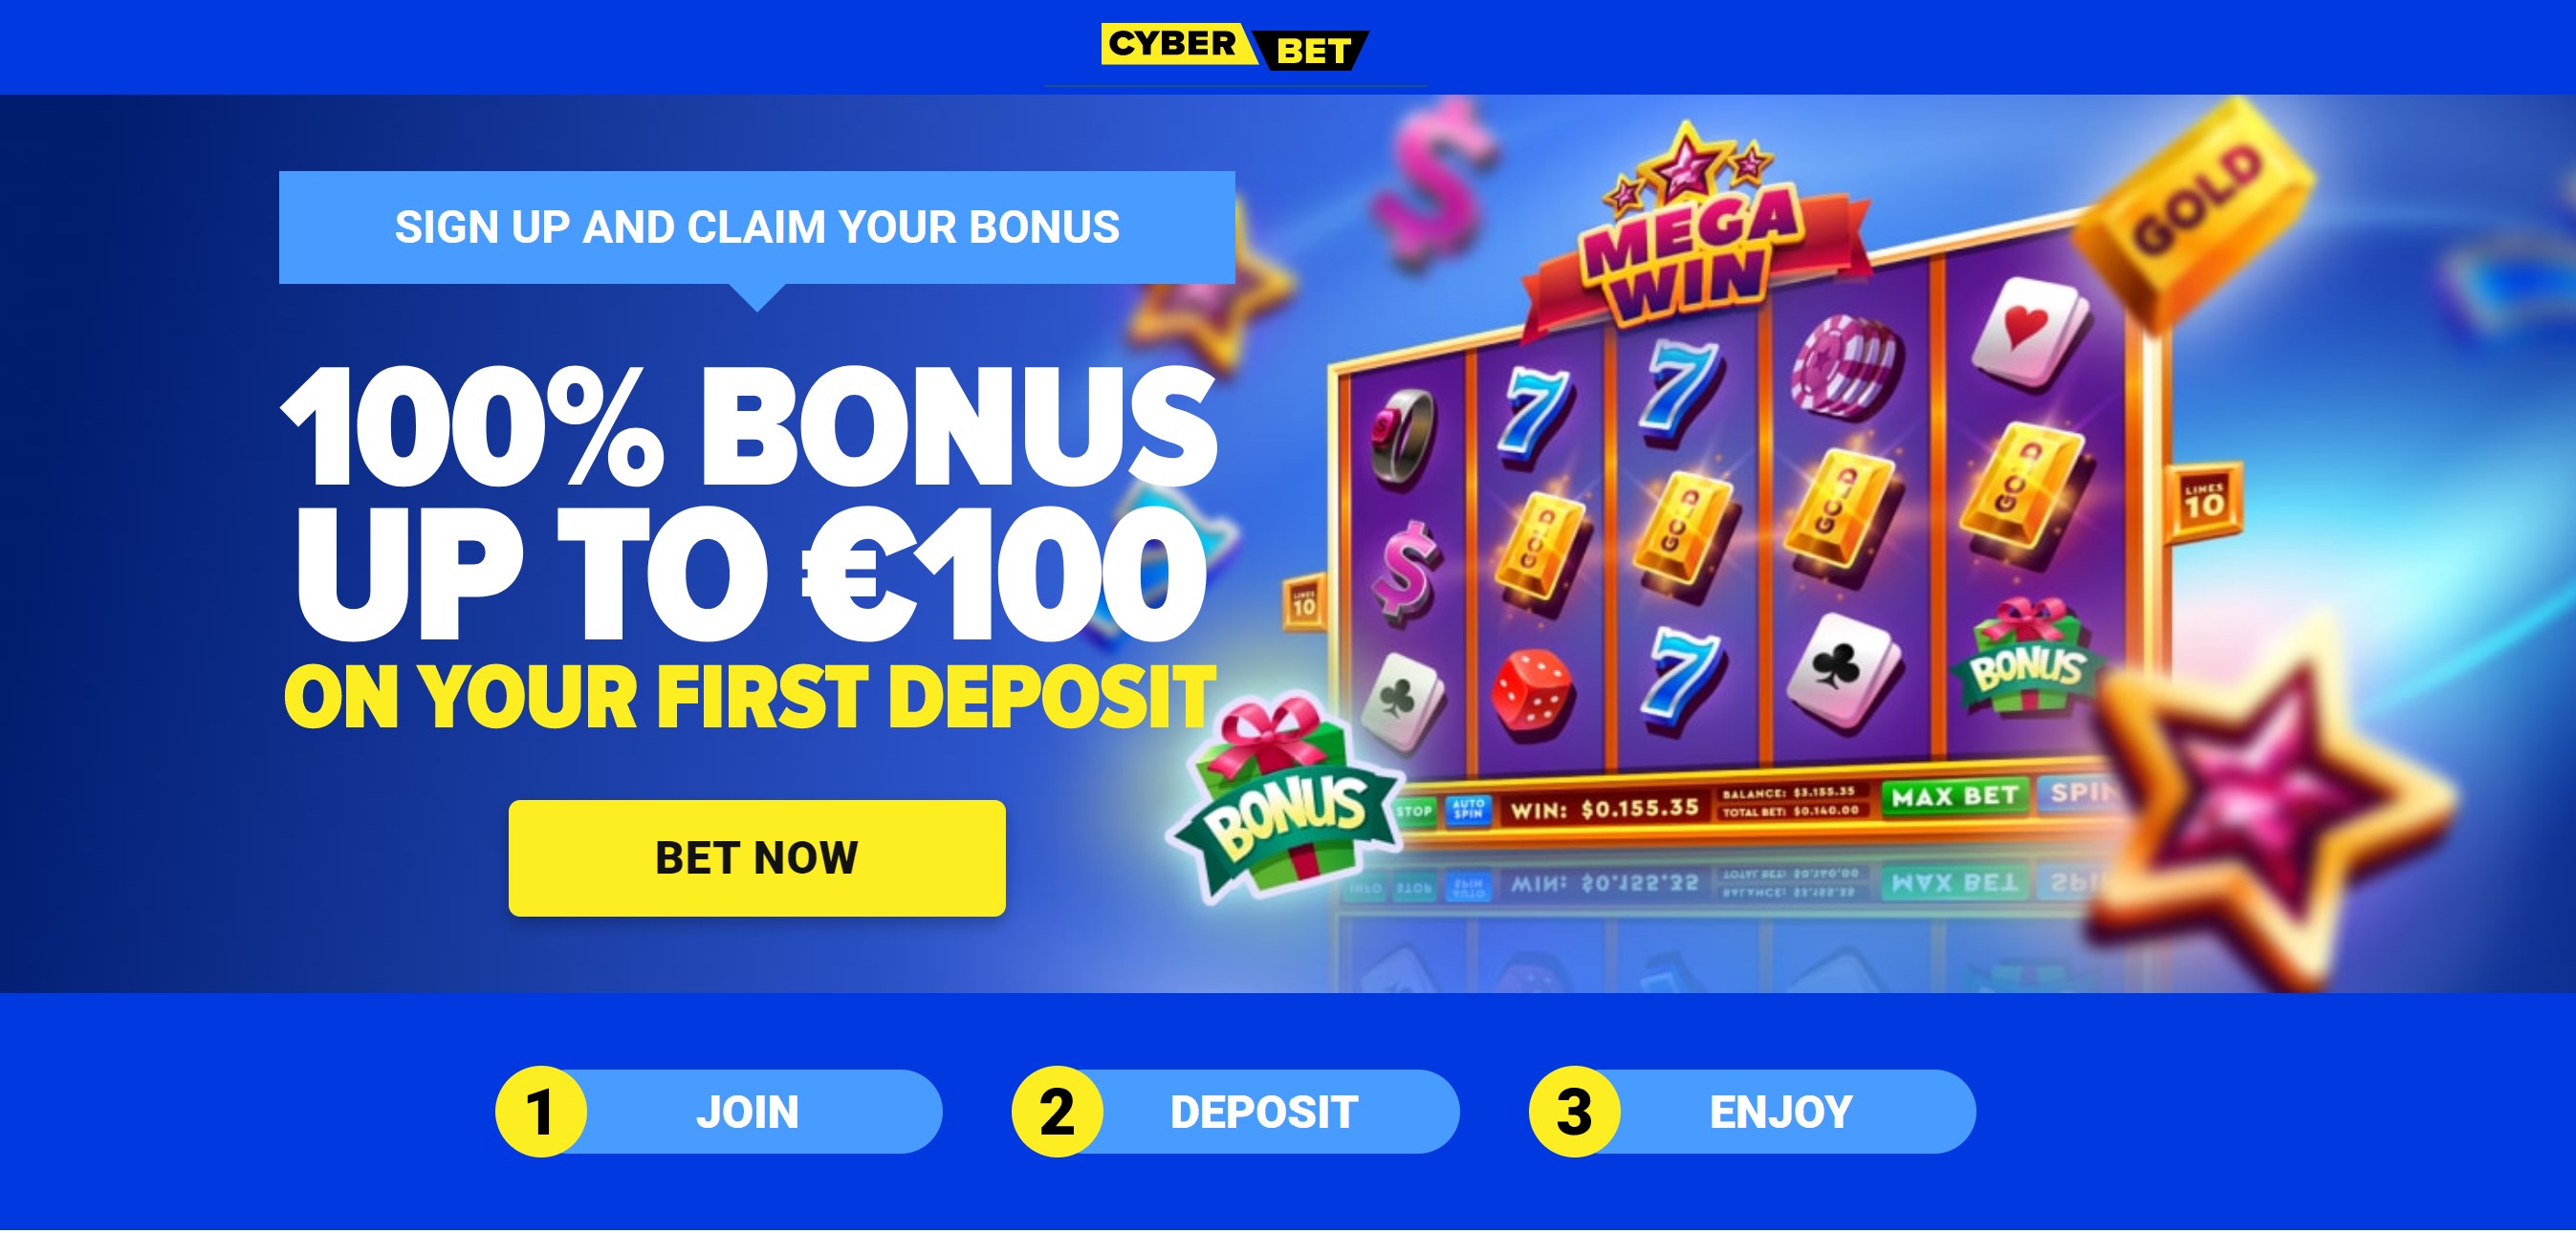 cyberbet casino bonus kazino papildymo įnašo premija